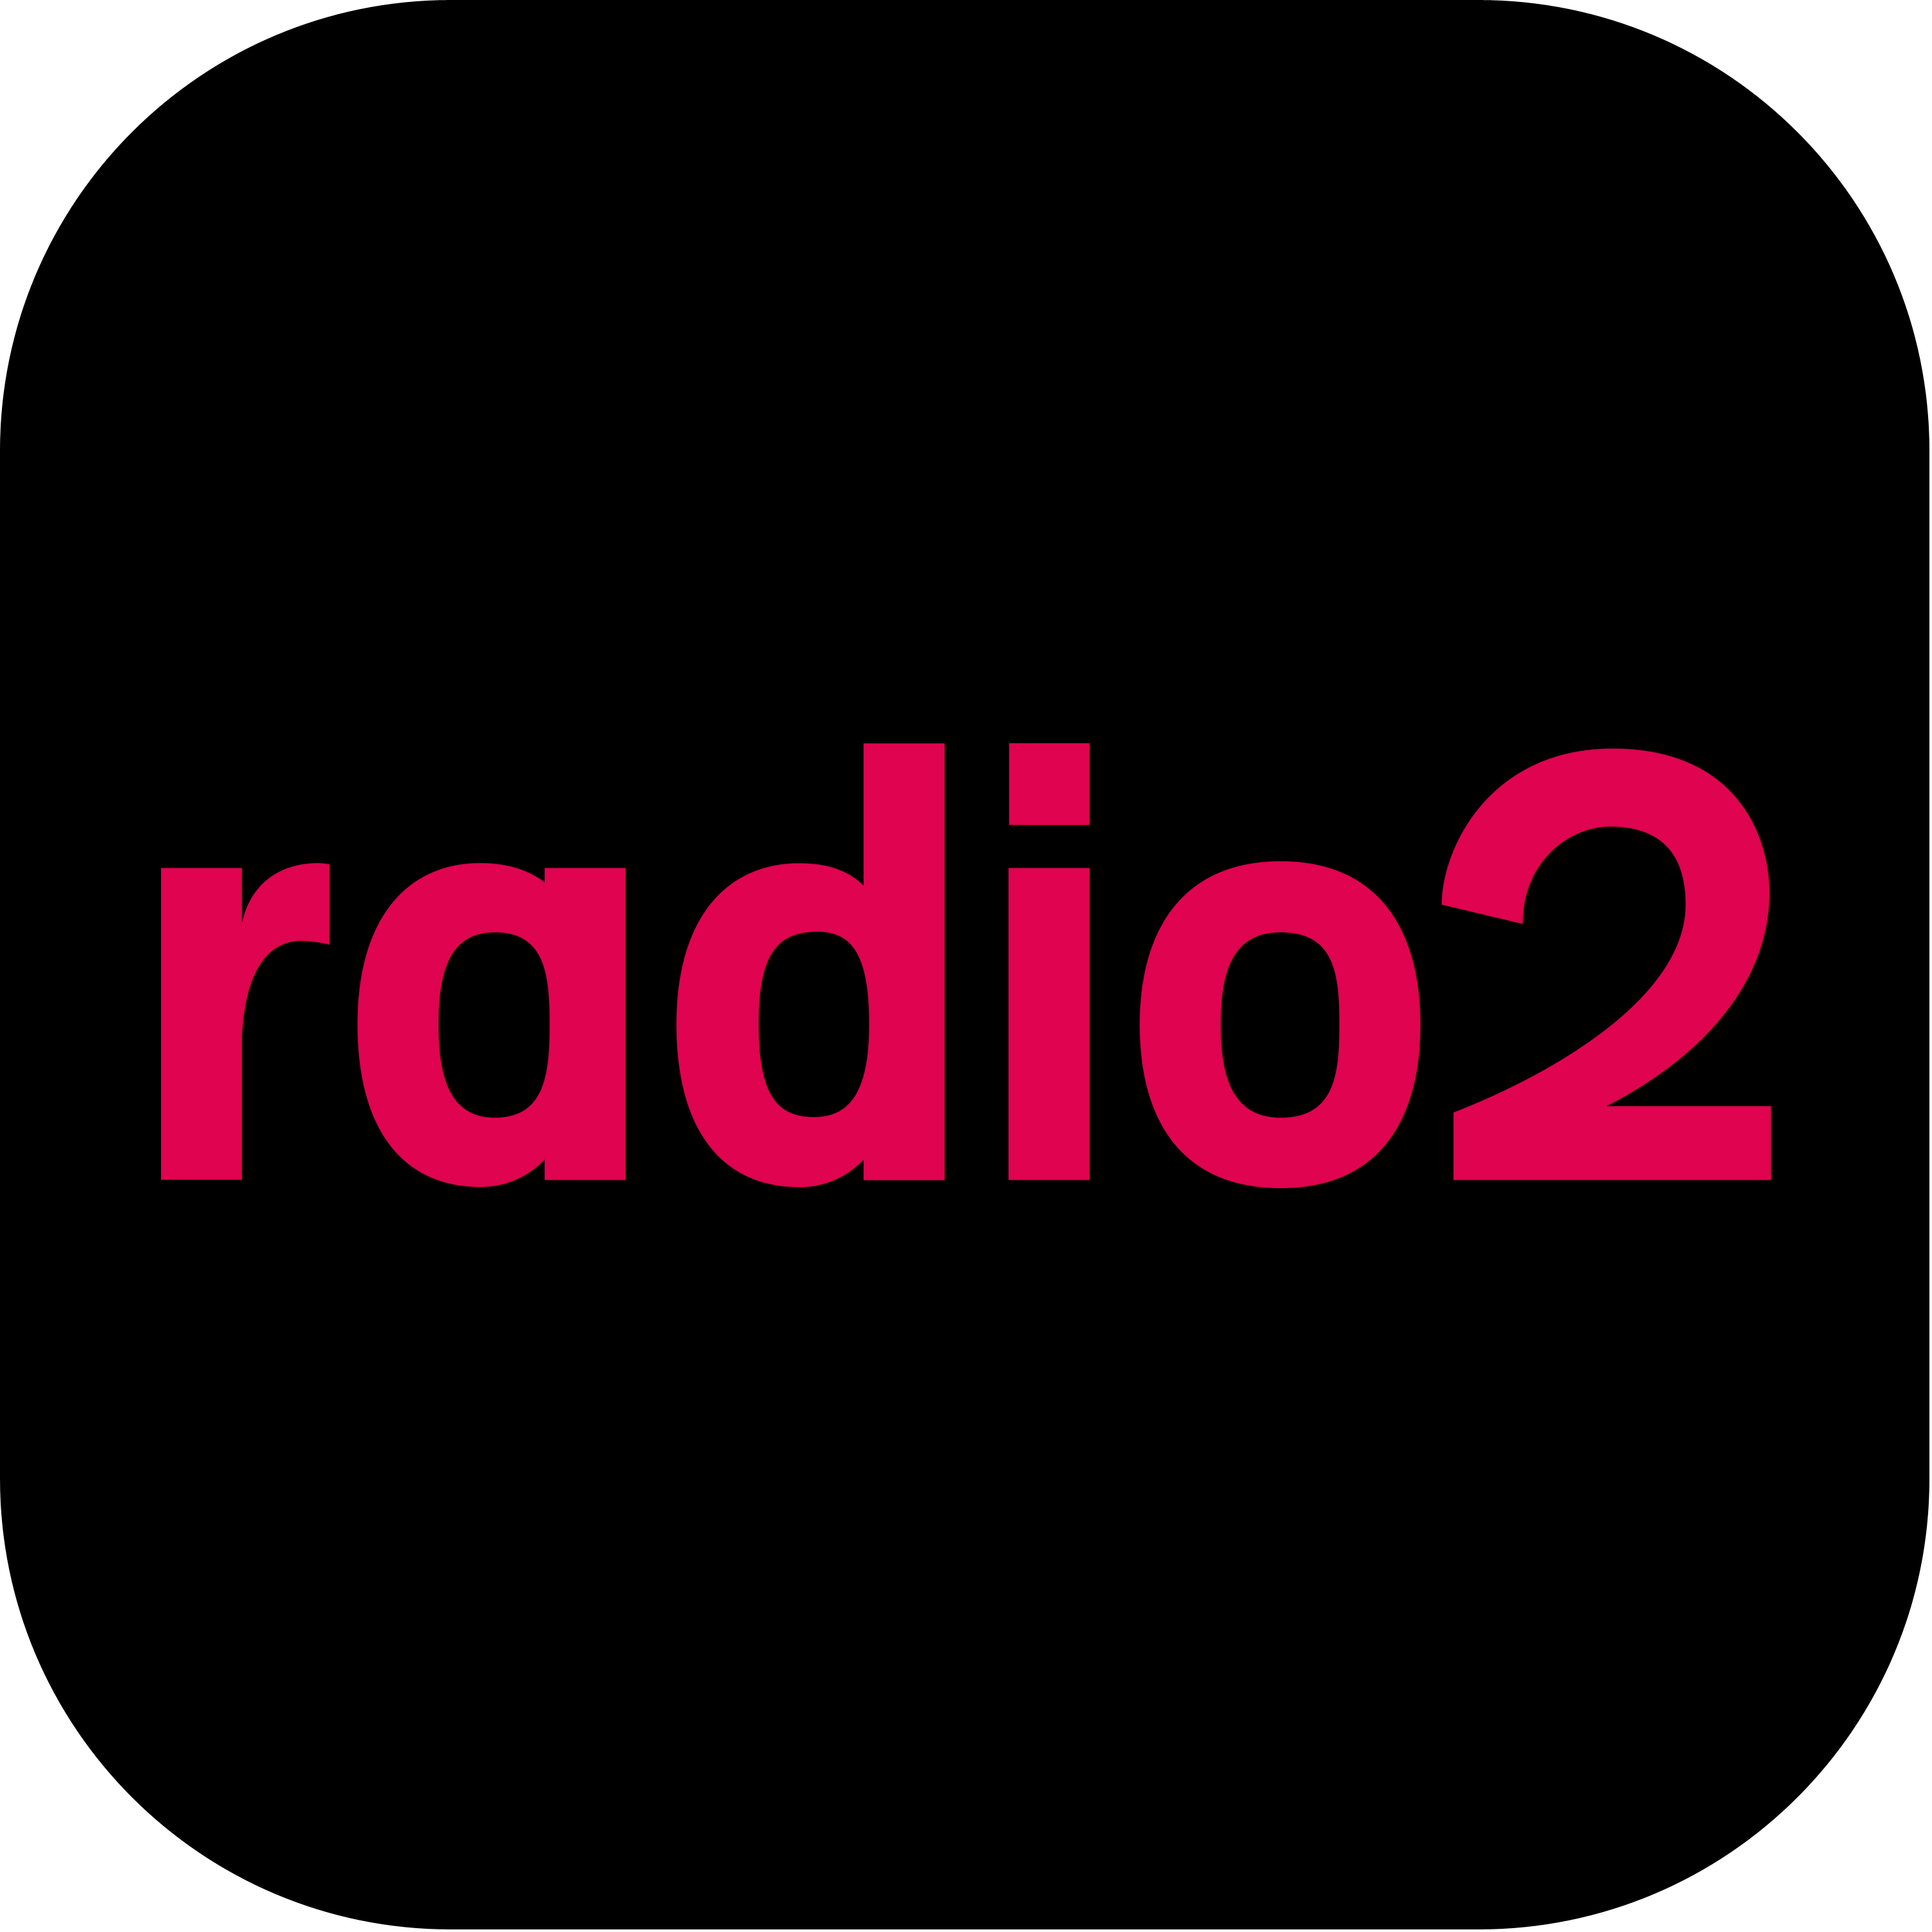 Vrt Radio 2 Logo 2022 Transparent Picture